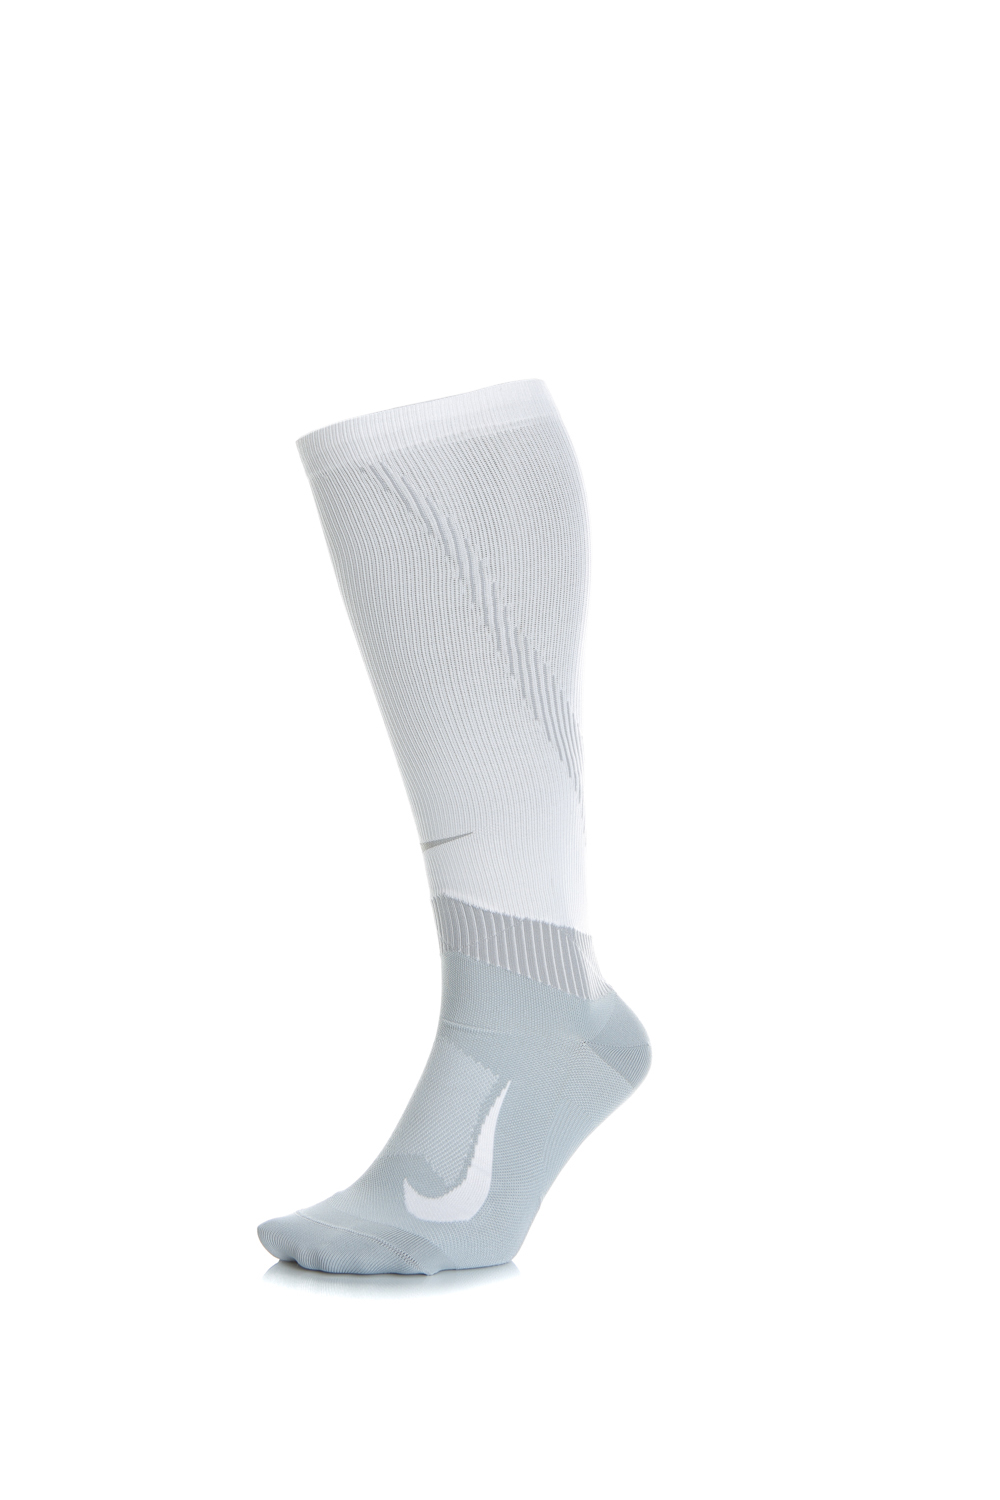 Ανδρικά/Αξεσουάρ/Κάλτσες NIKE - Unisex κάλτσες NIKE SPARK COMP λευκές